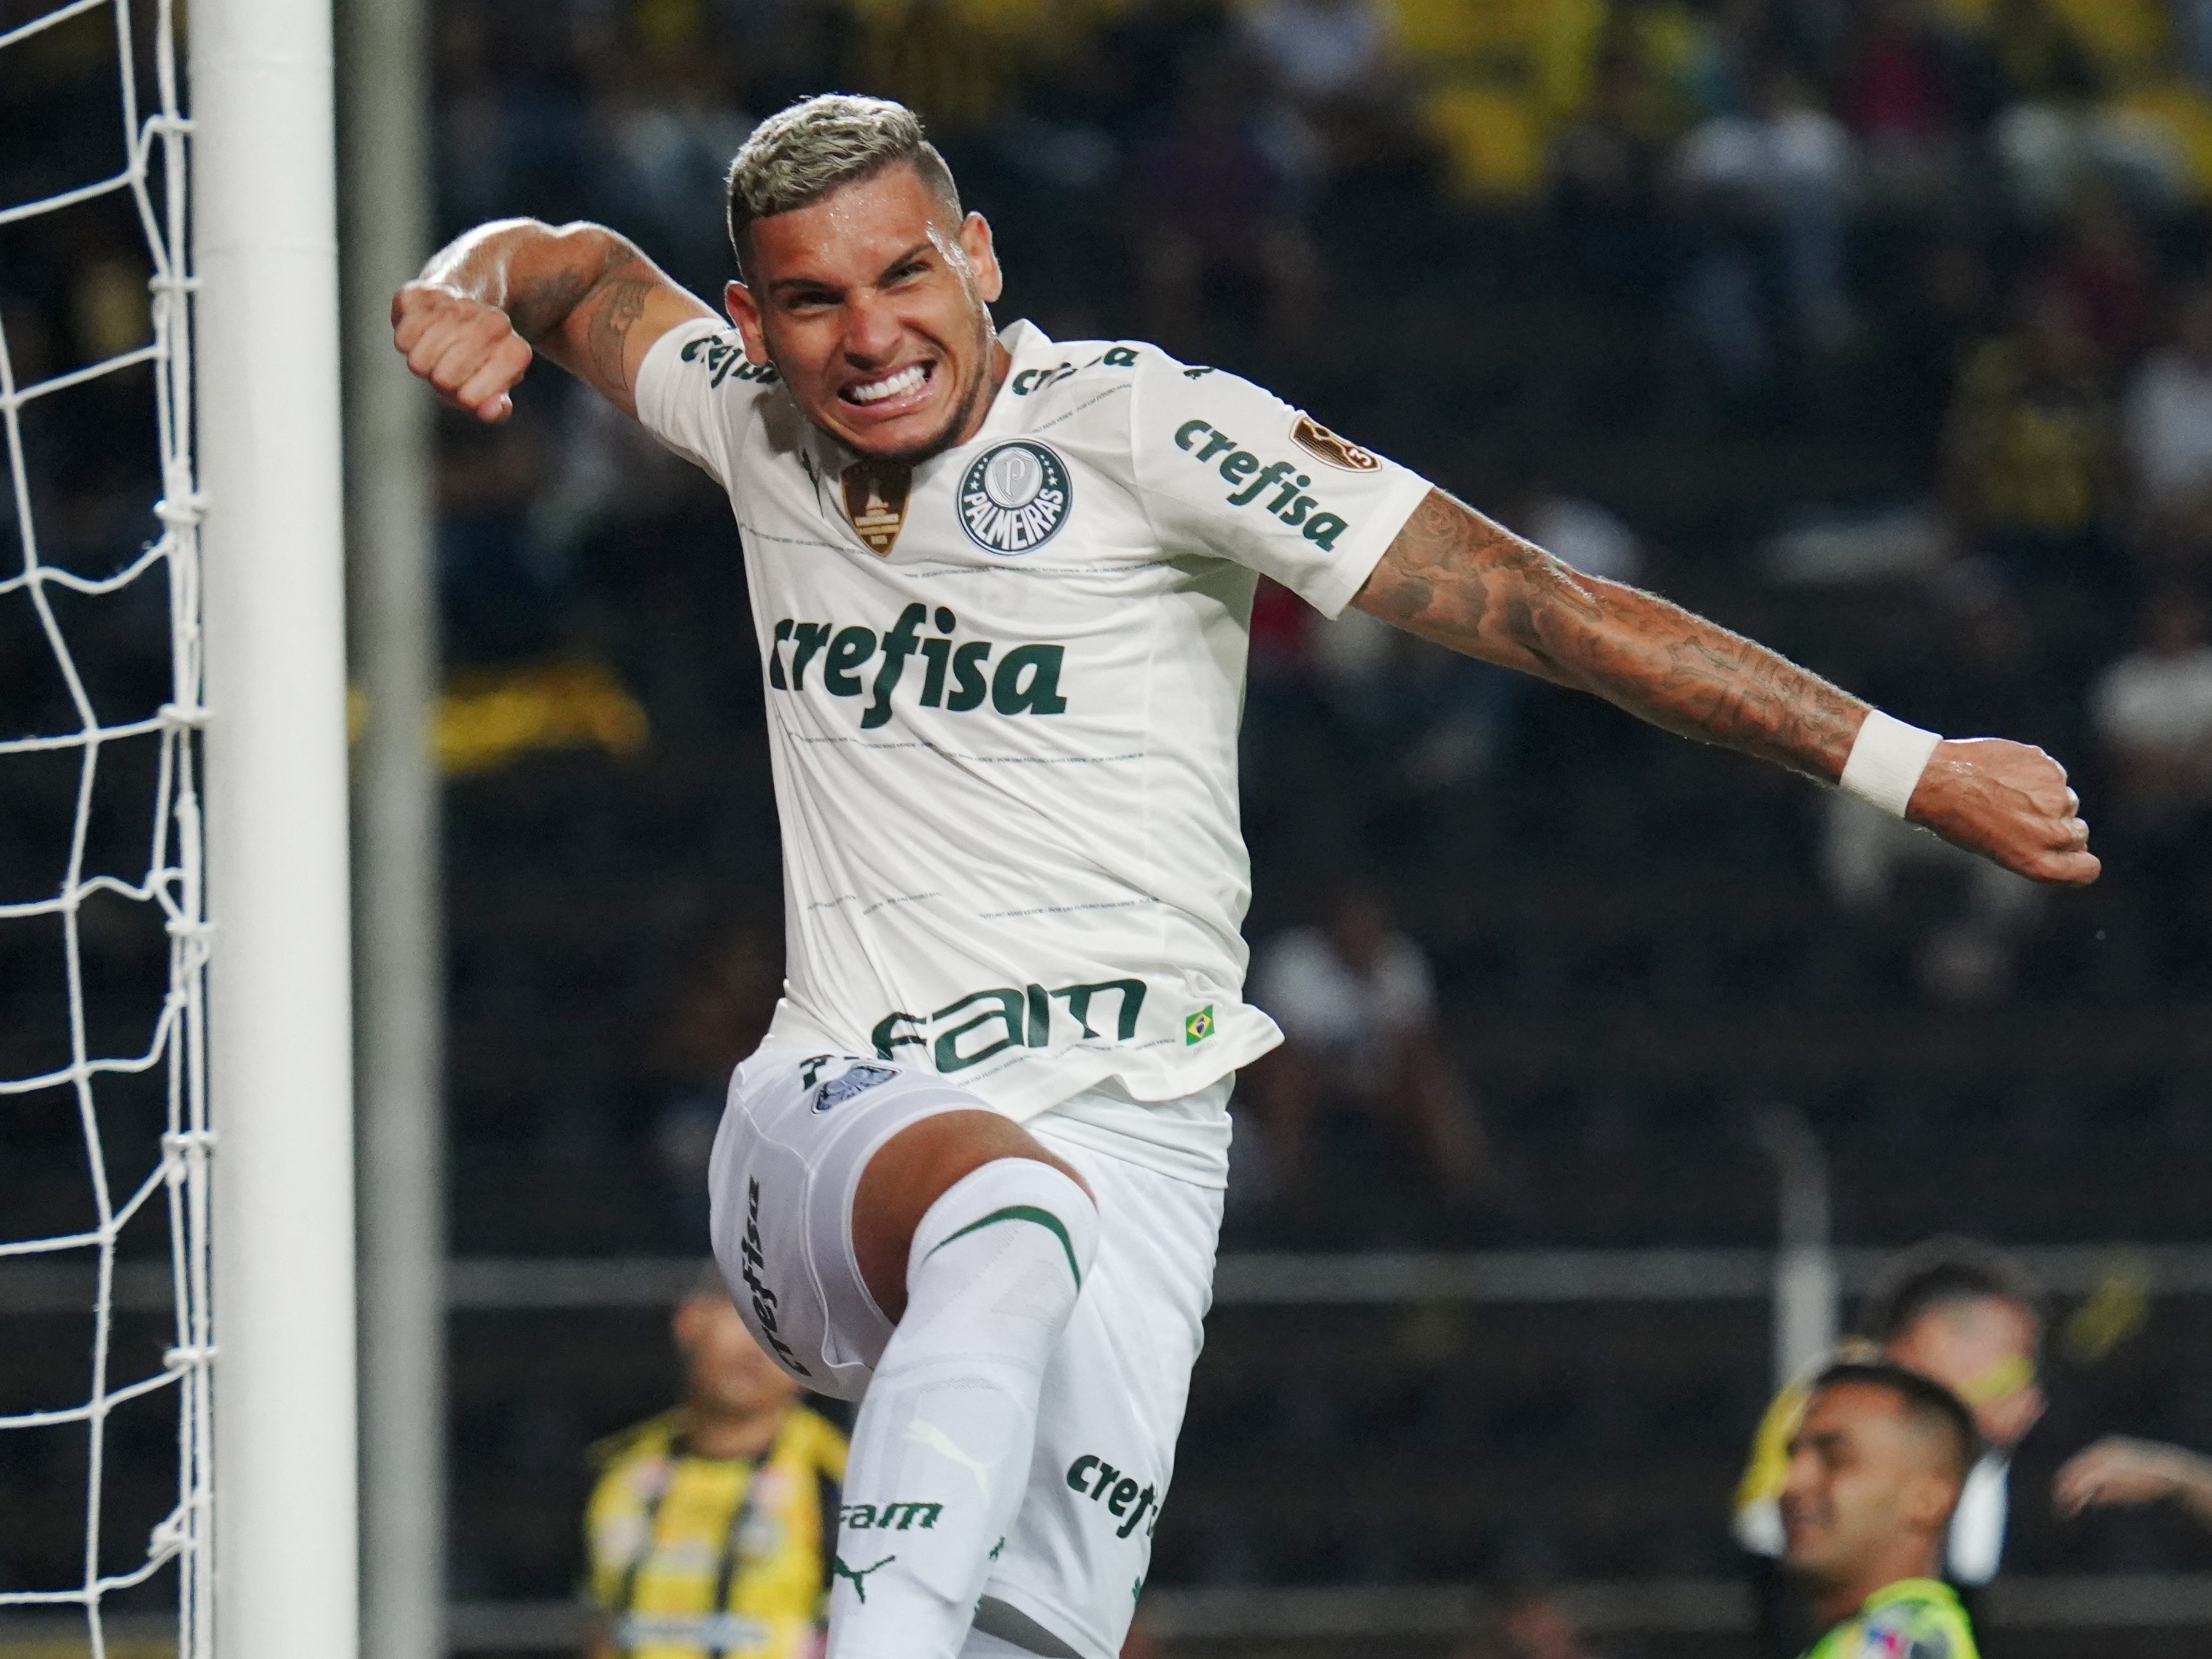 Libertadores 2022: SBT define jogo de início da transmissão – Dabeme